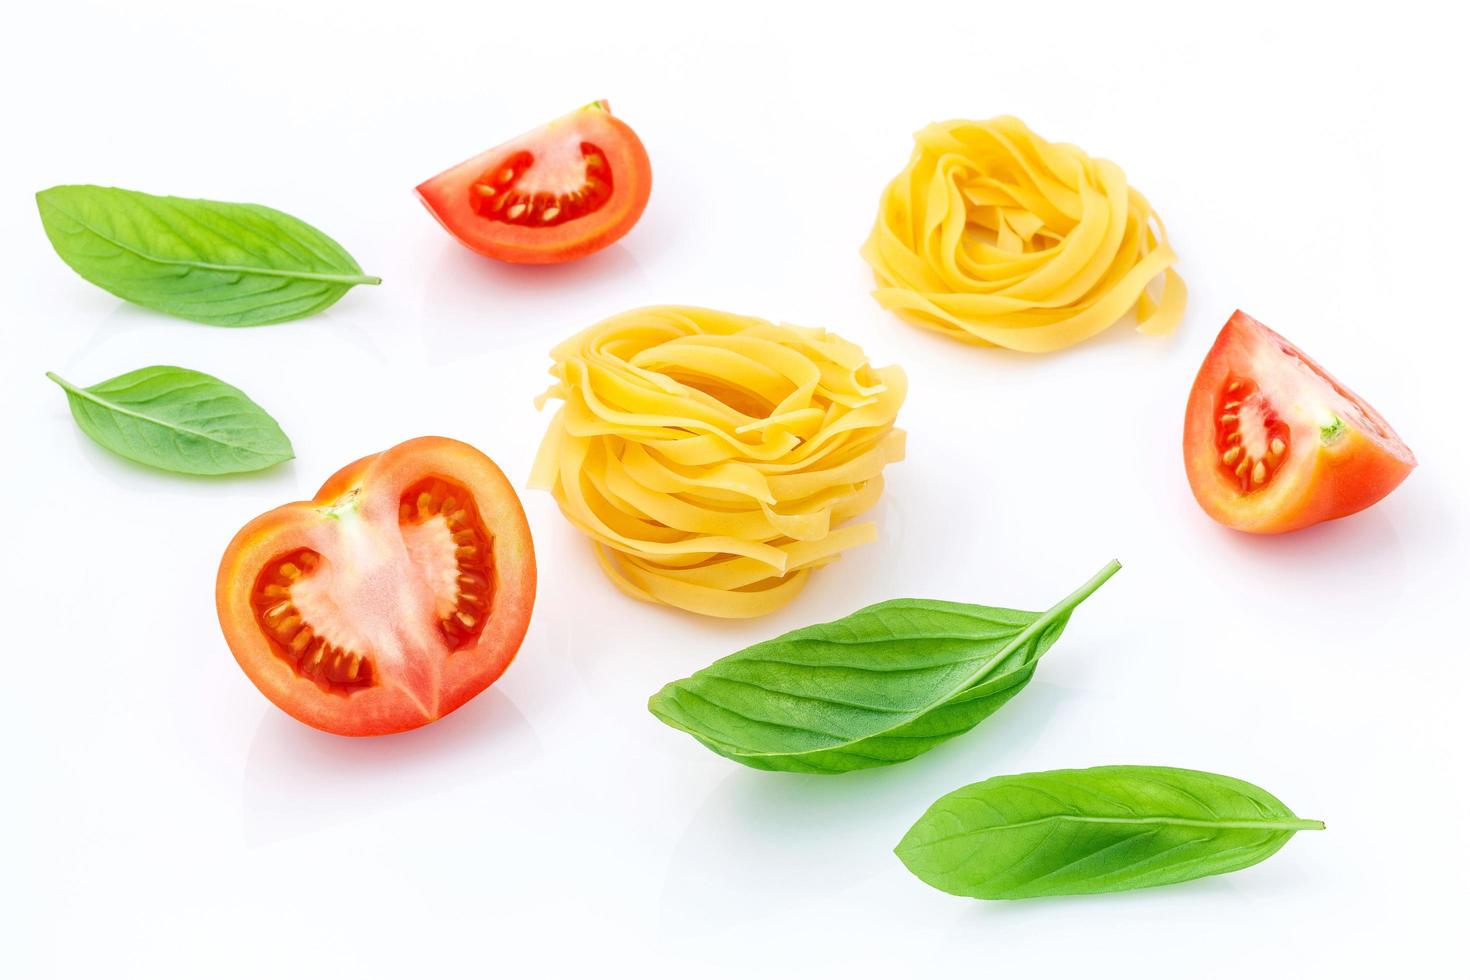 italienisches Nahrungsmittelkonzept der Fettuccine mit Tomate und süßem Basilikum lokalisiert auf einem weißen Hintergrund foto